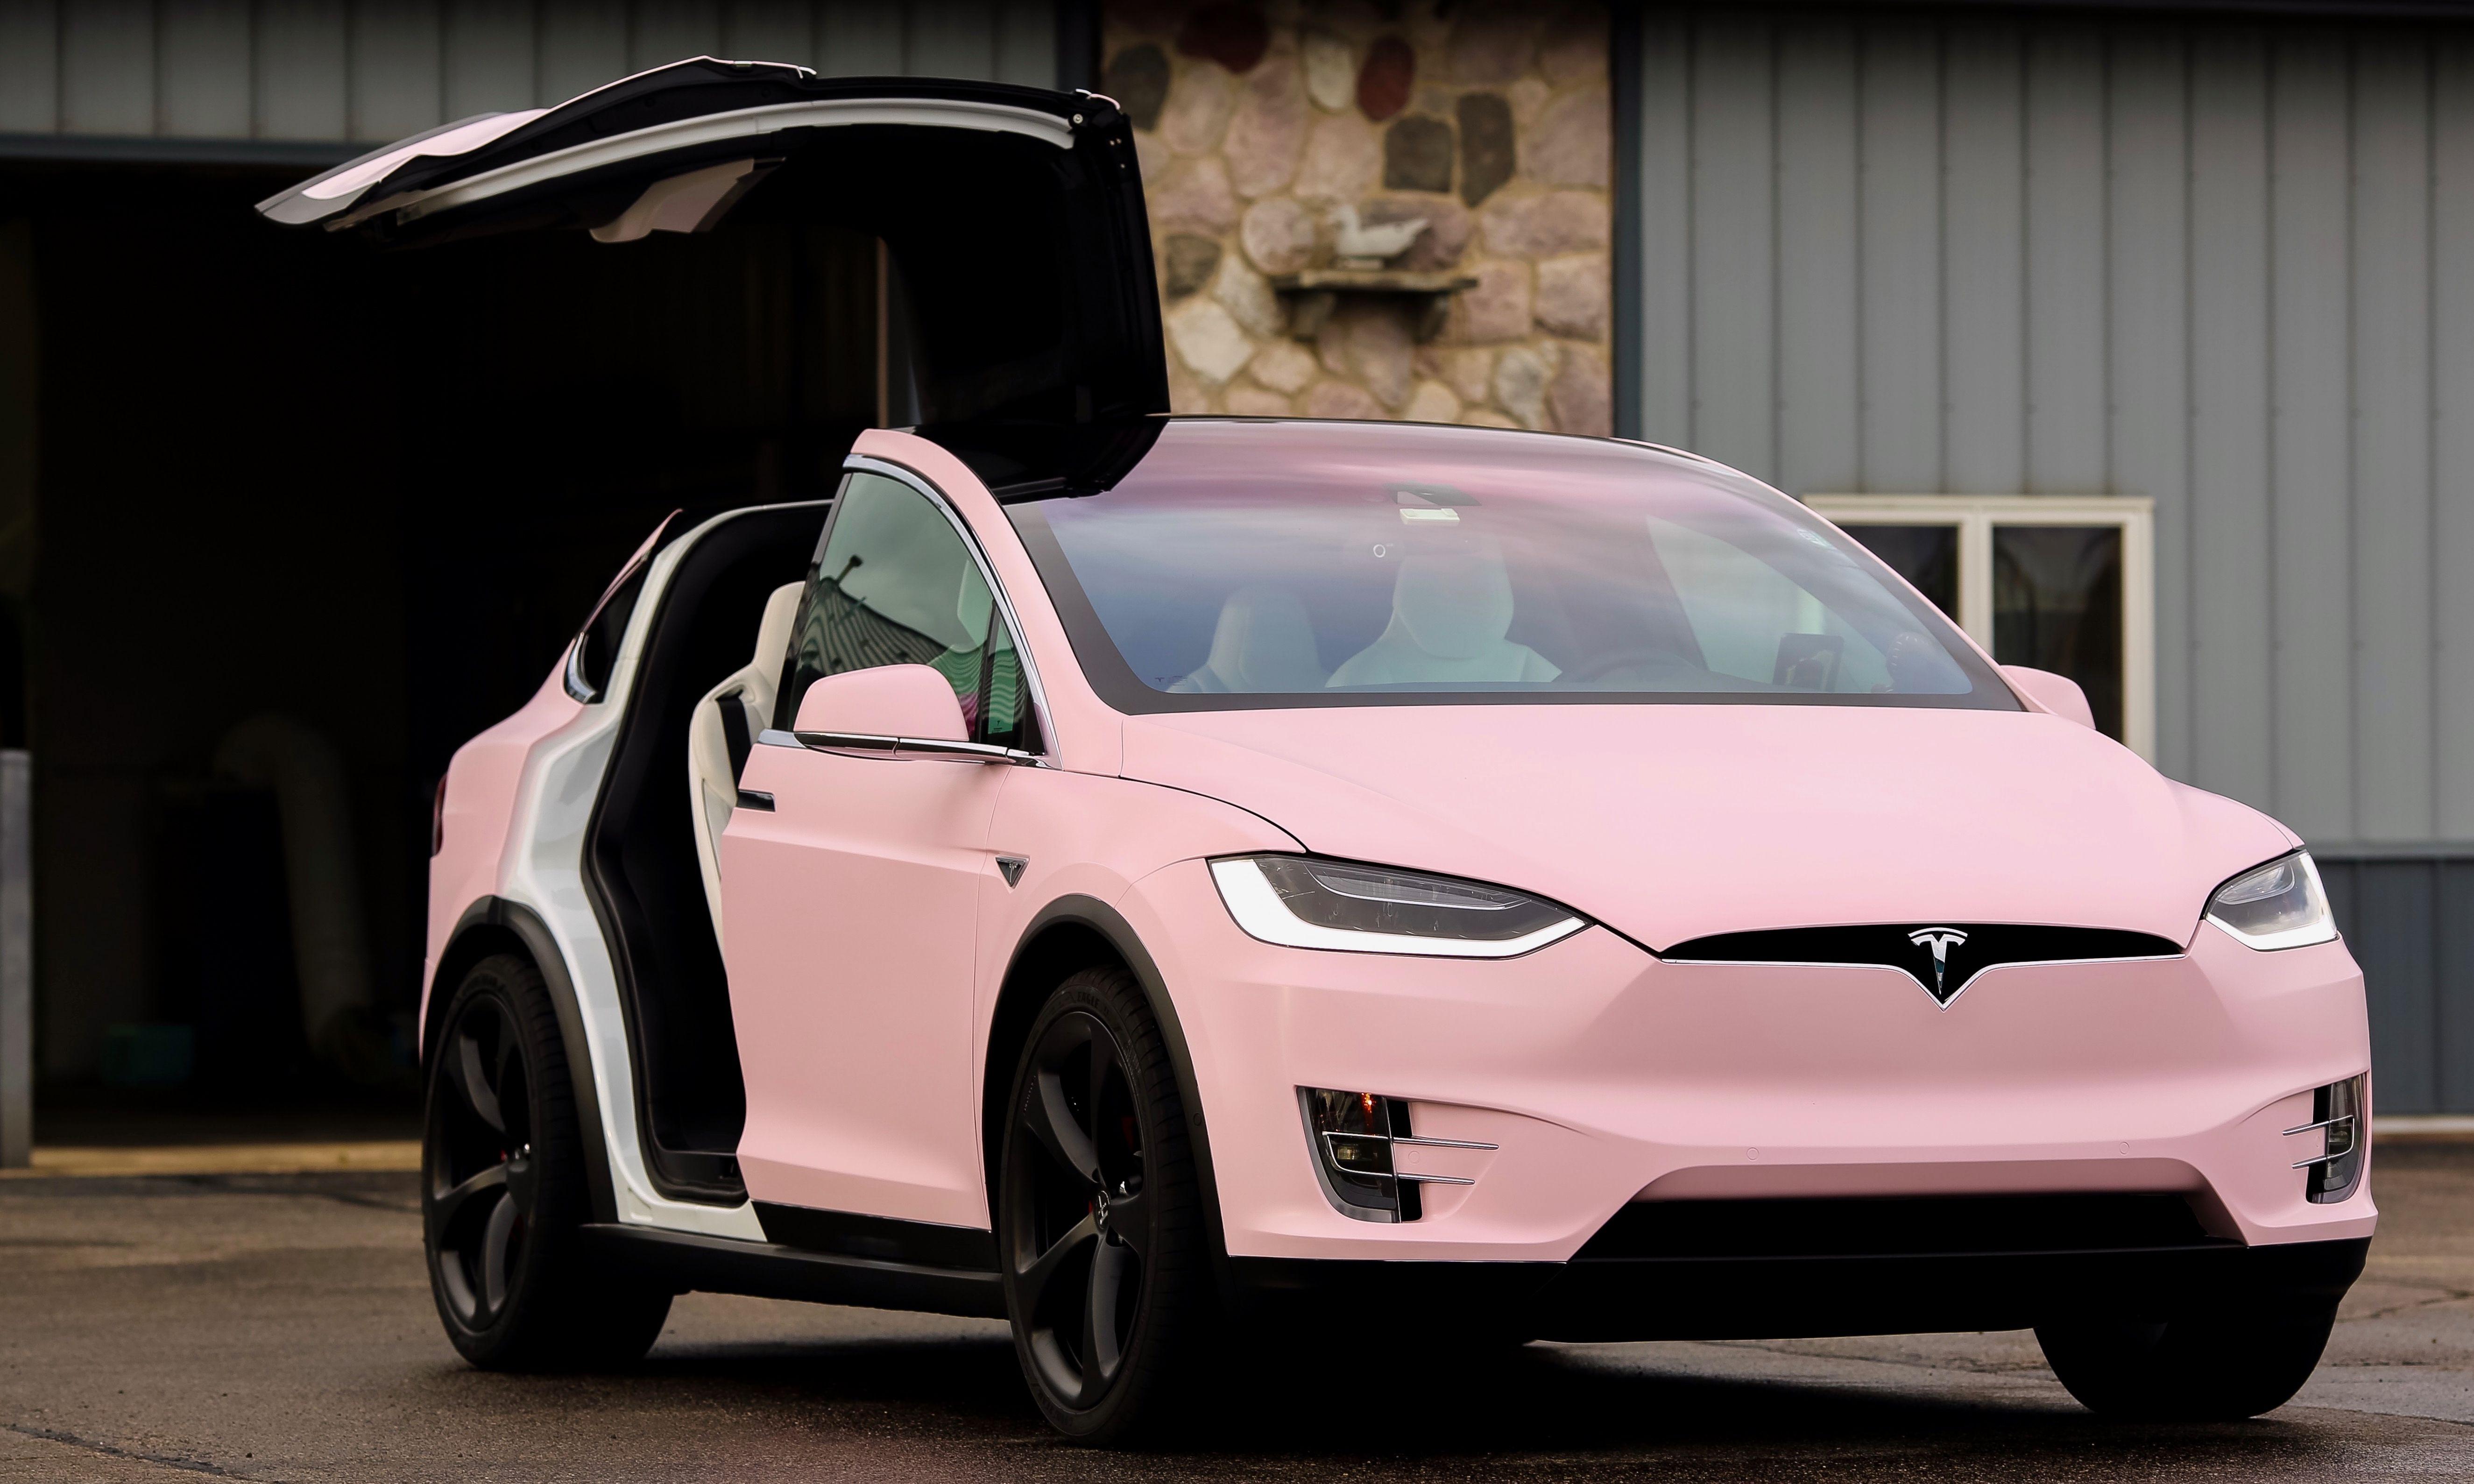 Meet Verity The Bubblegum Pink Tesla Model X Models Car